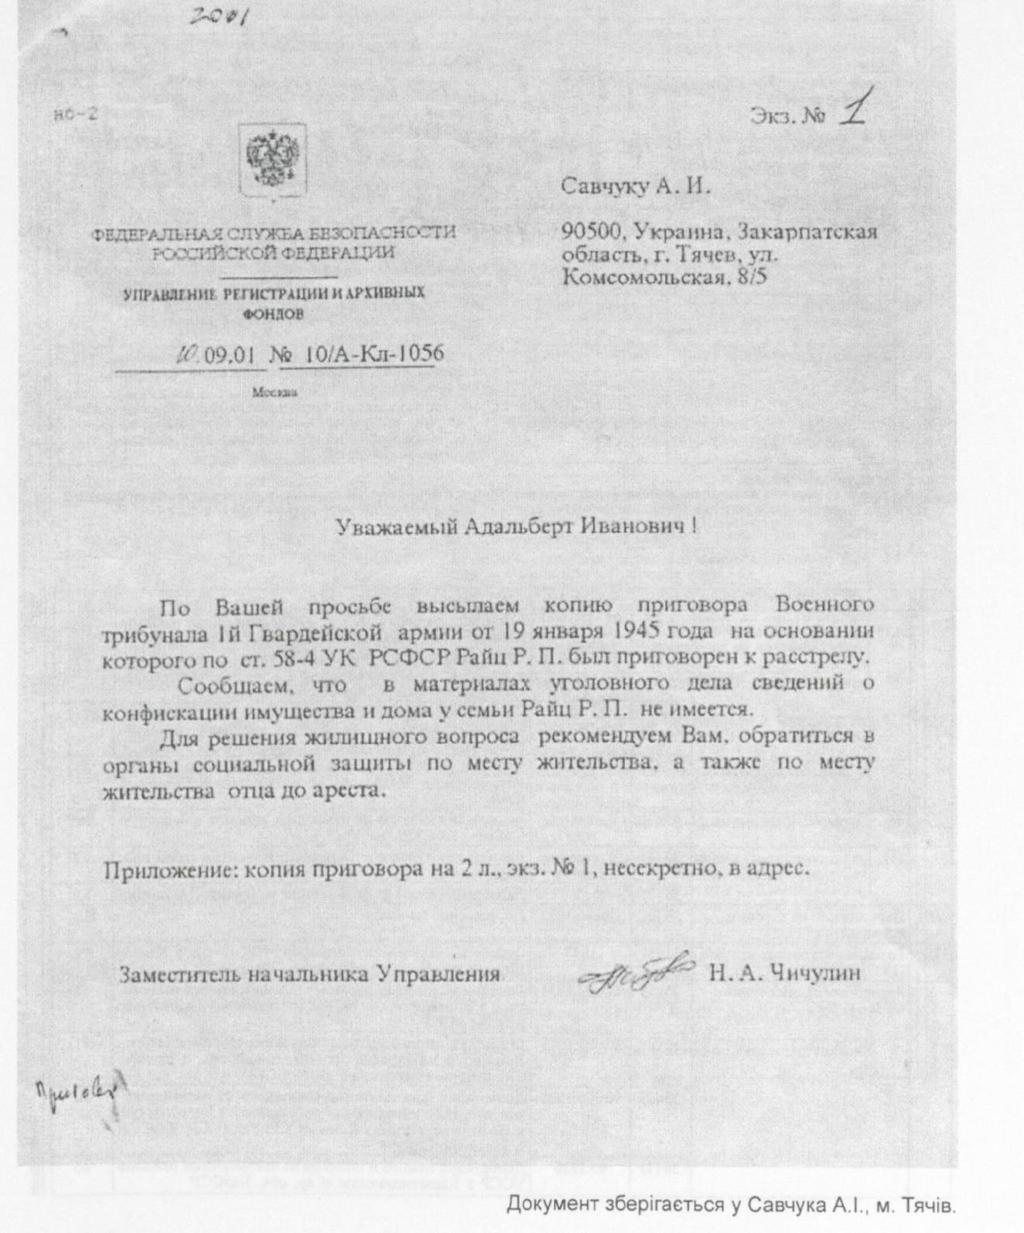 2001. szeptember 10. Az Orosz Föderáció Levéltári Szolgálatának levele Szavcsuk Adalbert részére, amelynek melléklete tartalmazza a 4.